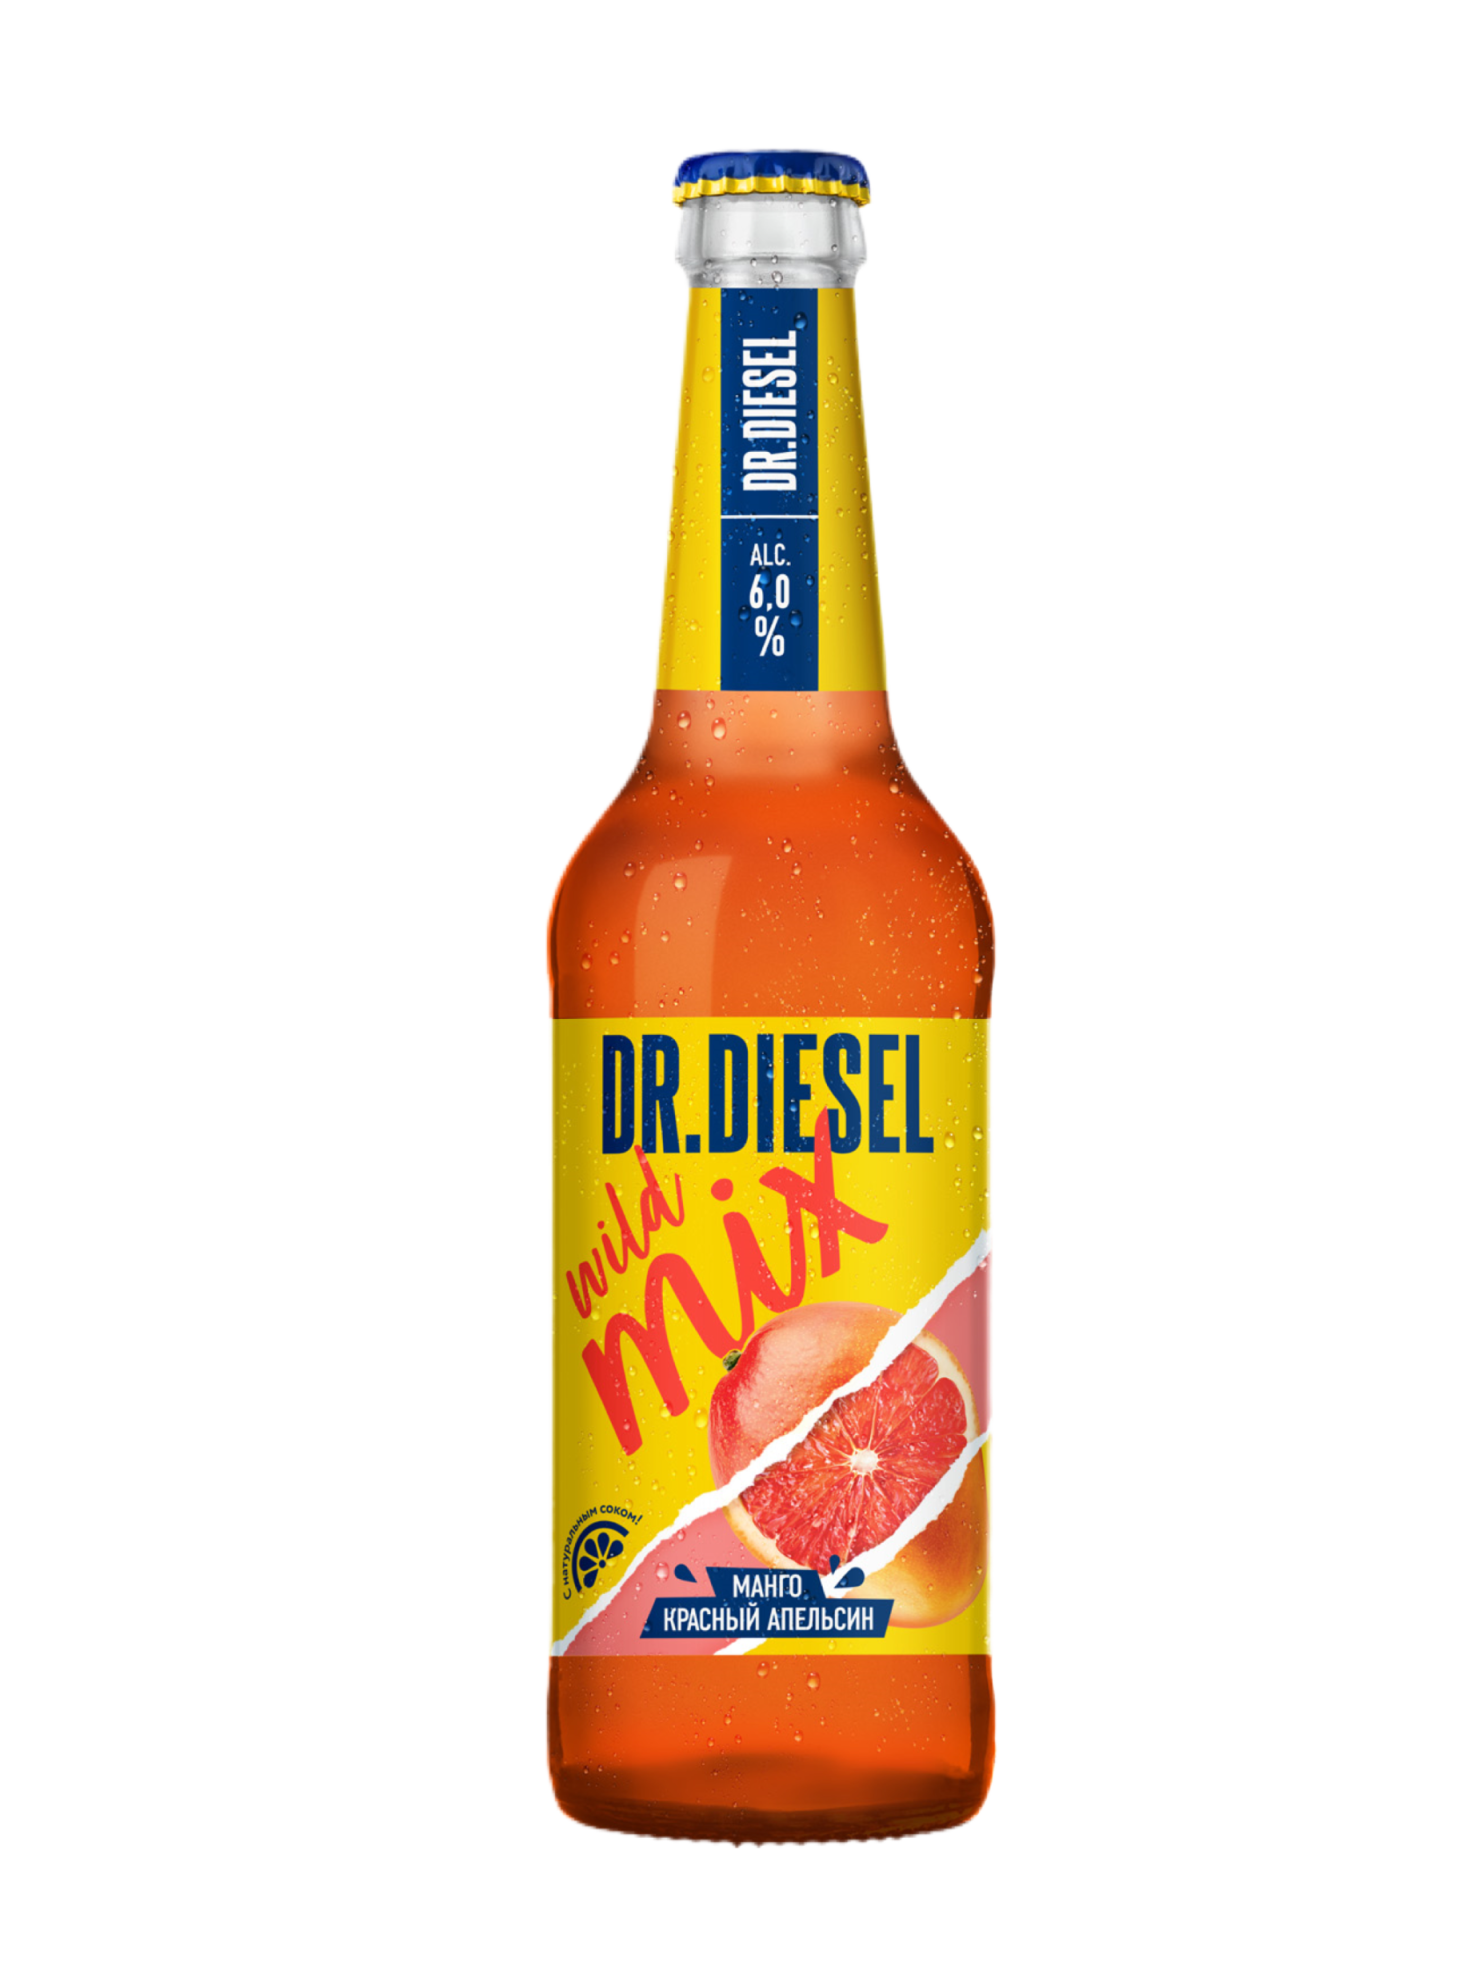 Дизель пиво вкусы. Пивной напиток доктор дизель манго и красный апельсин. Dr Diesel пиво манго красный апельсин. Пивной напиток Dr Diesel. Напиток Dr Diesel манго.